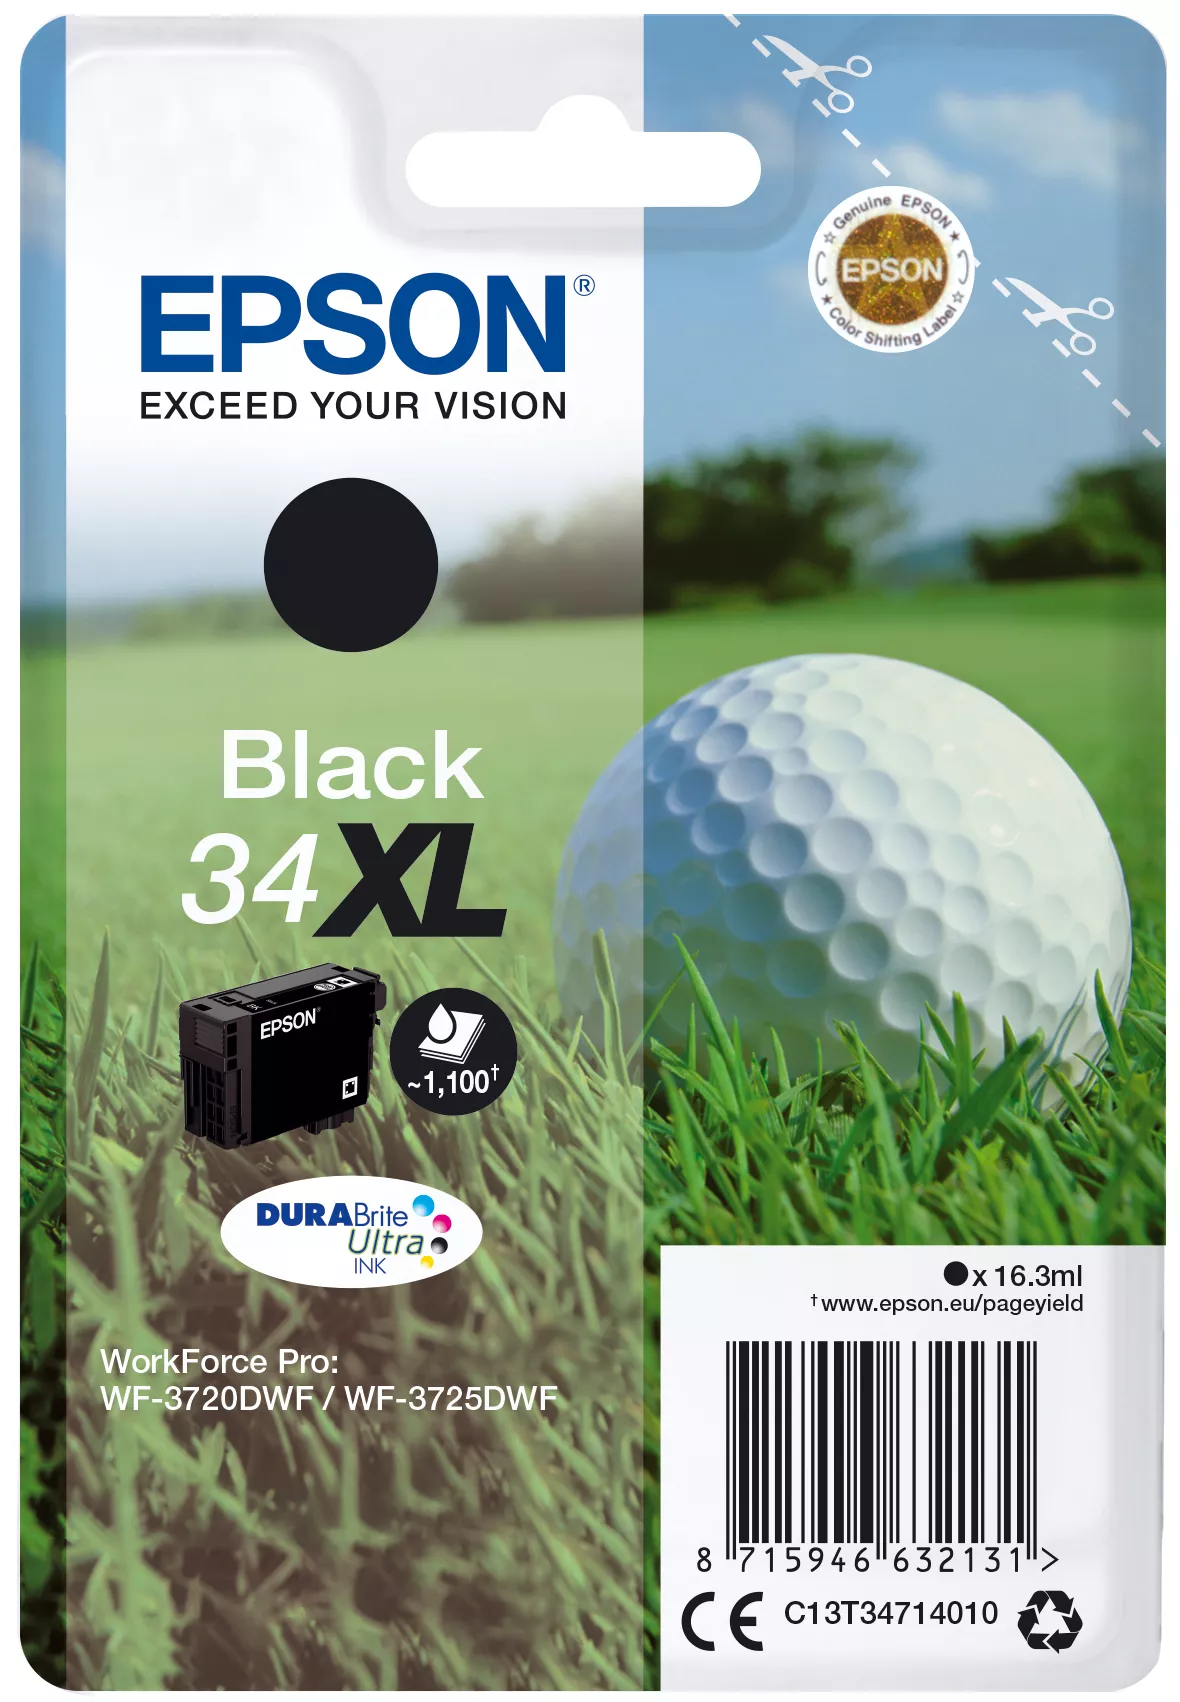 Achat EPSON Singlepack 34XL Encre Noir DURABrite Ultra 16,3ml au meilleur prix